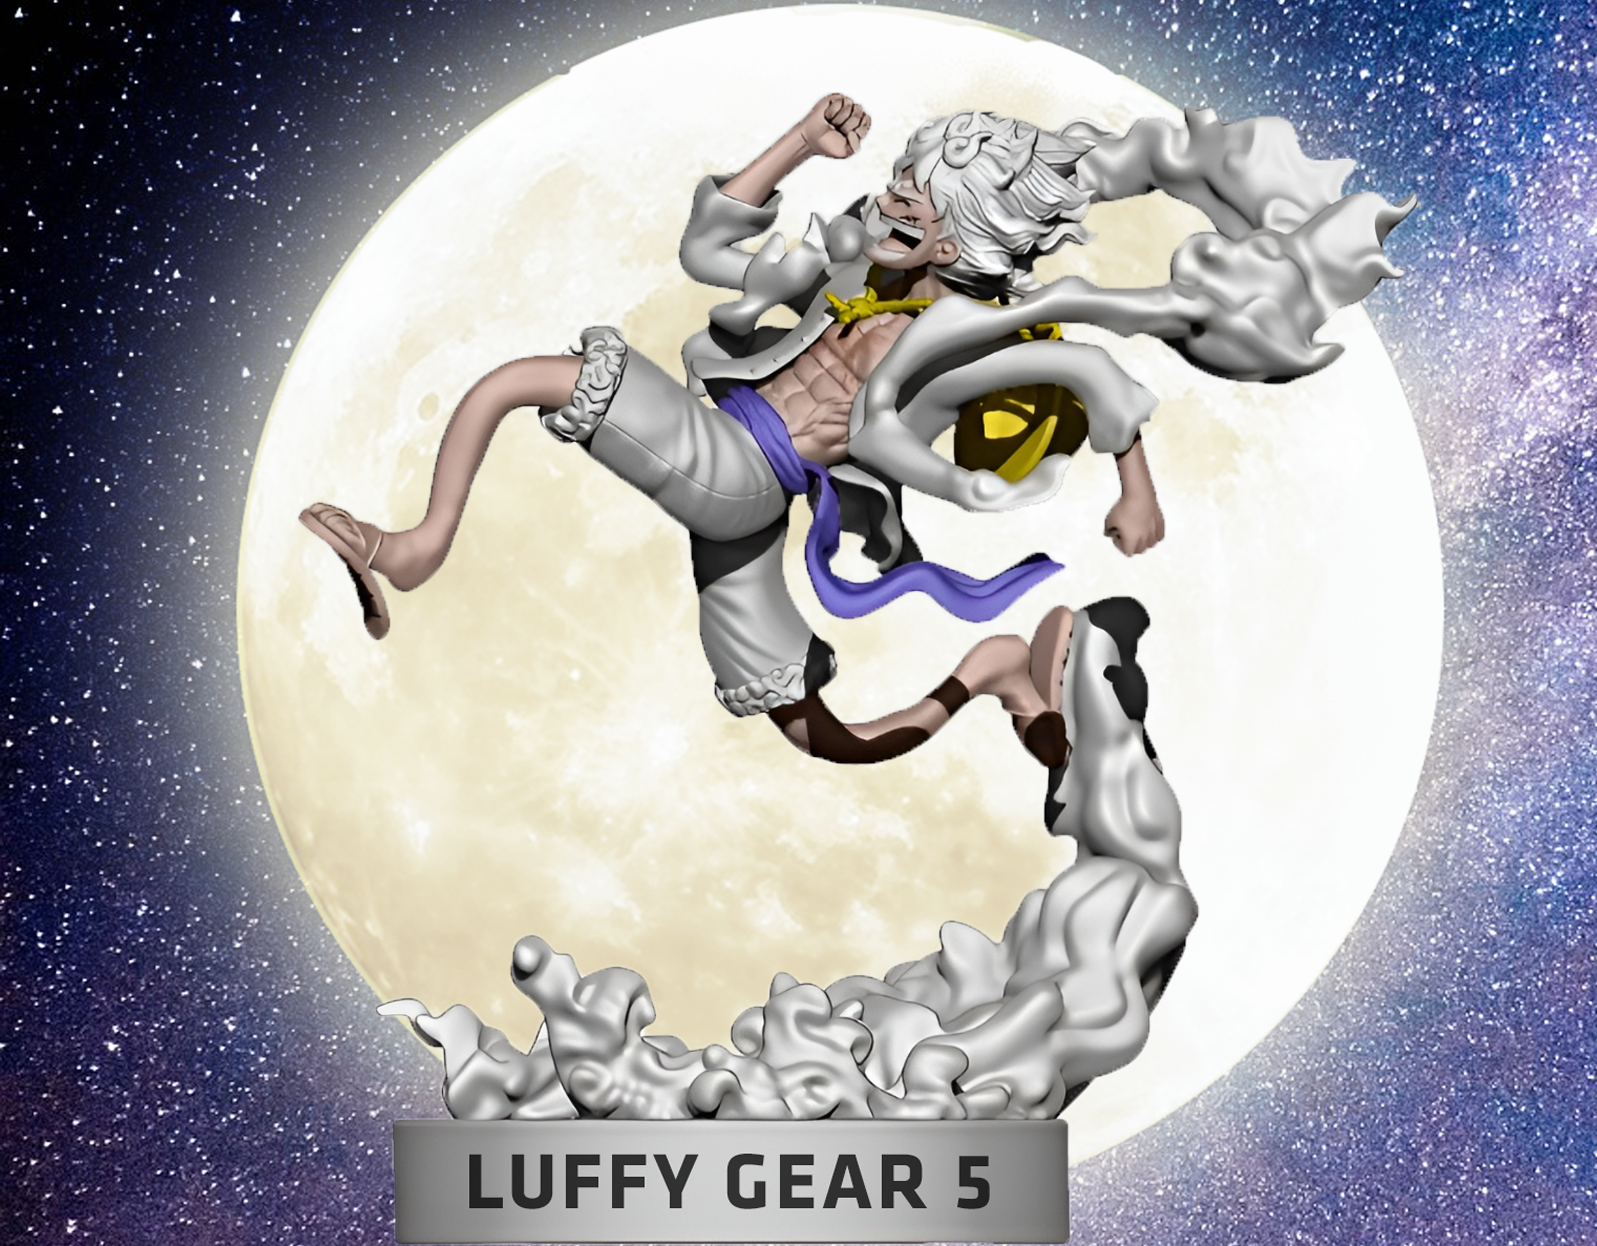 Luffy as Nika running PNG Image